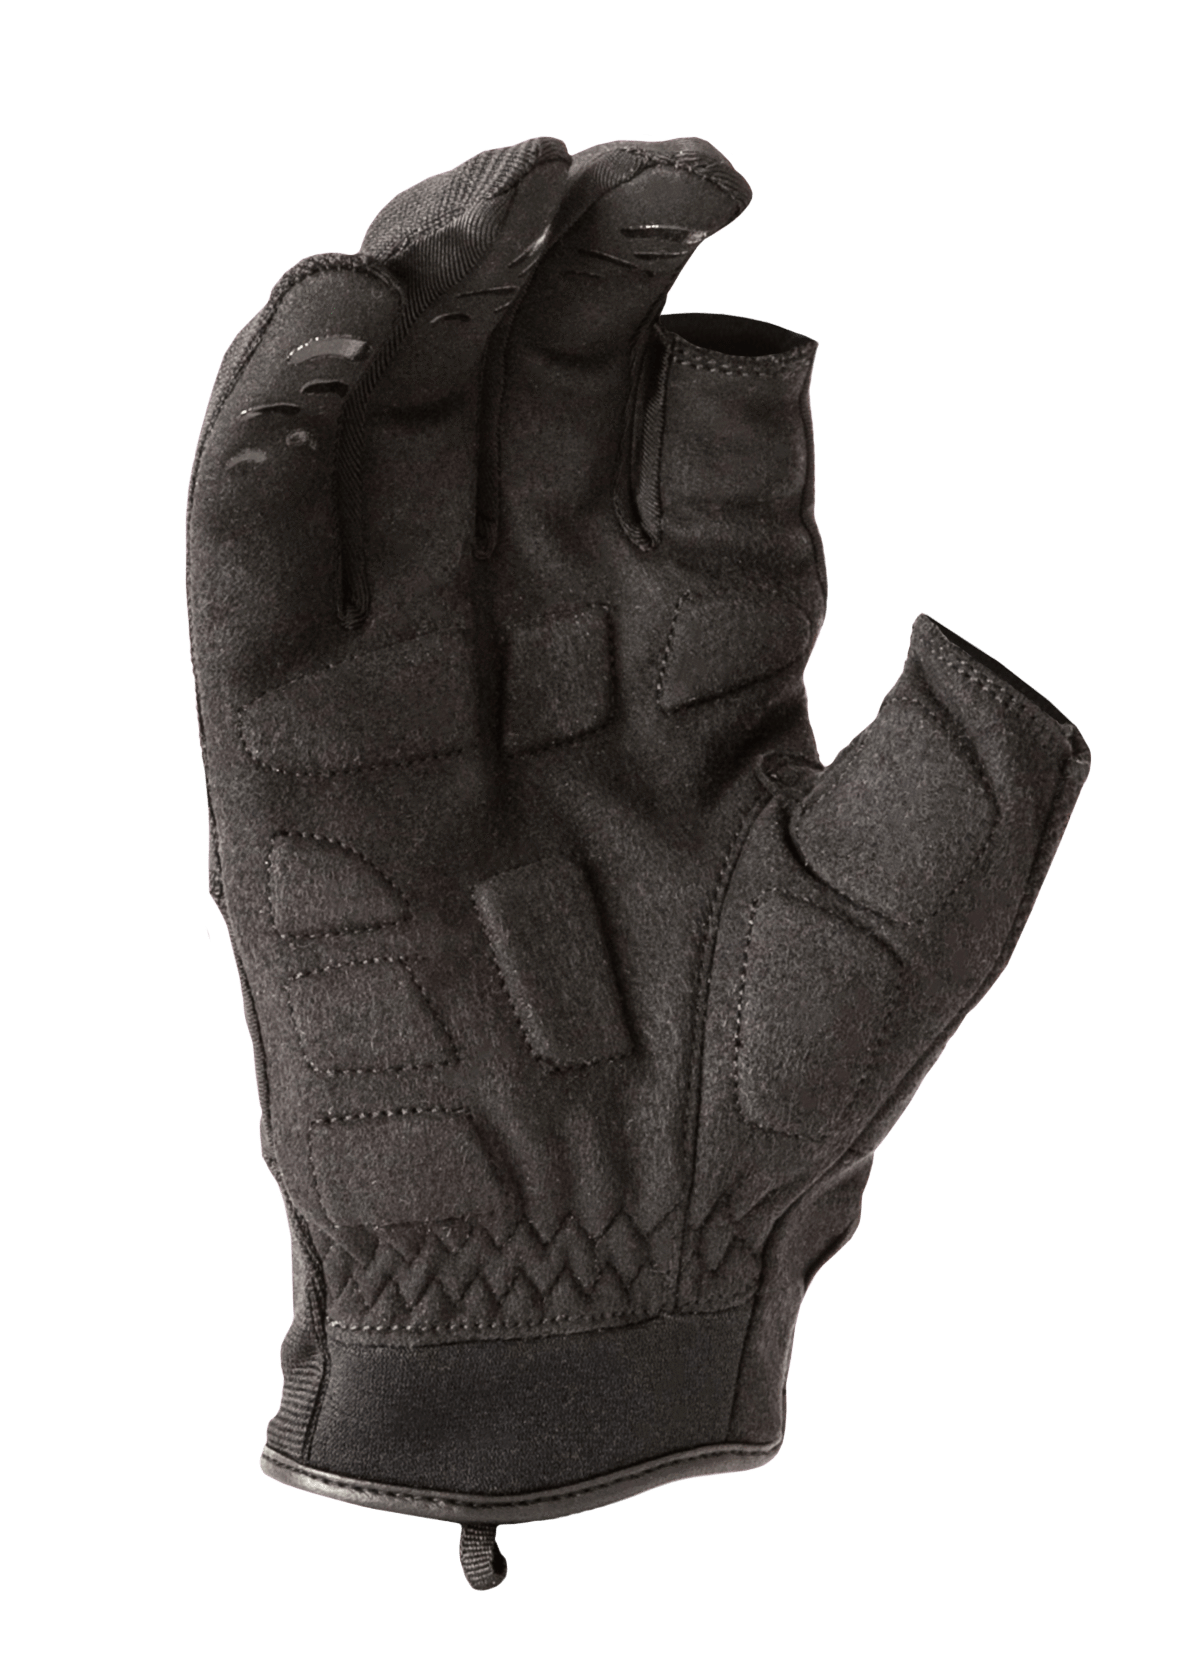 HWI Gear MCU134 Multi Use Cut Resistant Glove Gloves HWI Gear Tactical Gear Supplier Tactical Distributors Australia